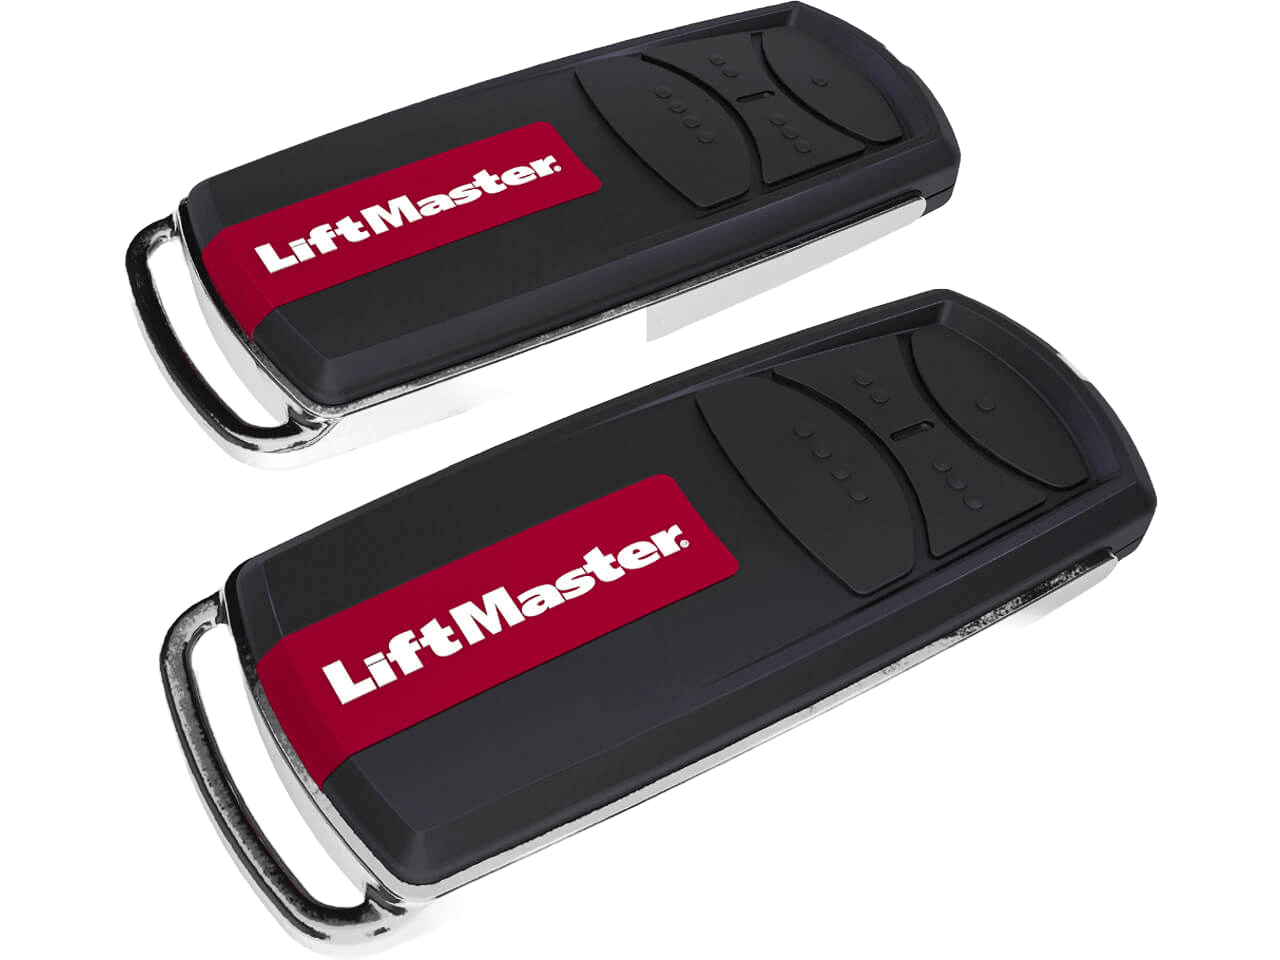 LiftMaster LM130EVF Residential Garage Door Opener 1300N up to 200 kg Door Weight